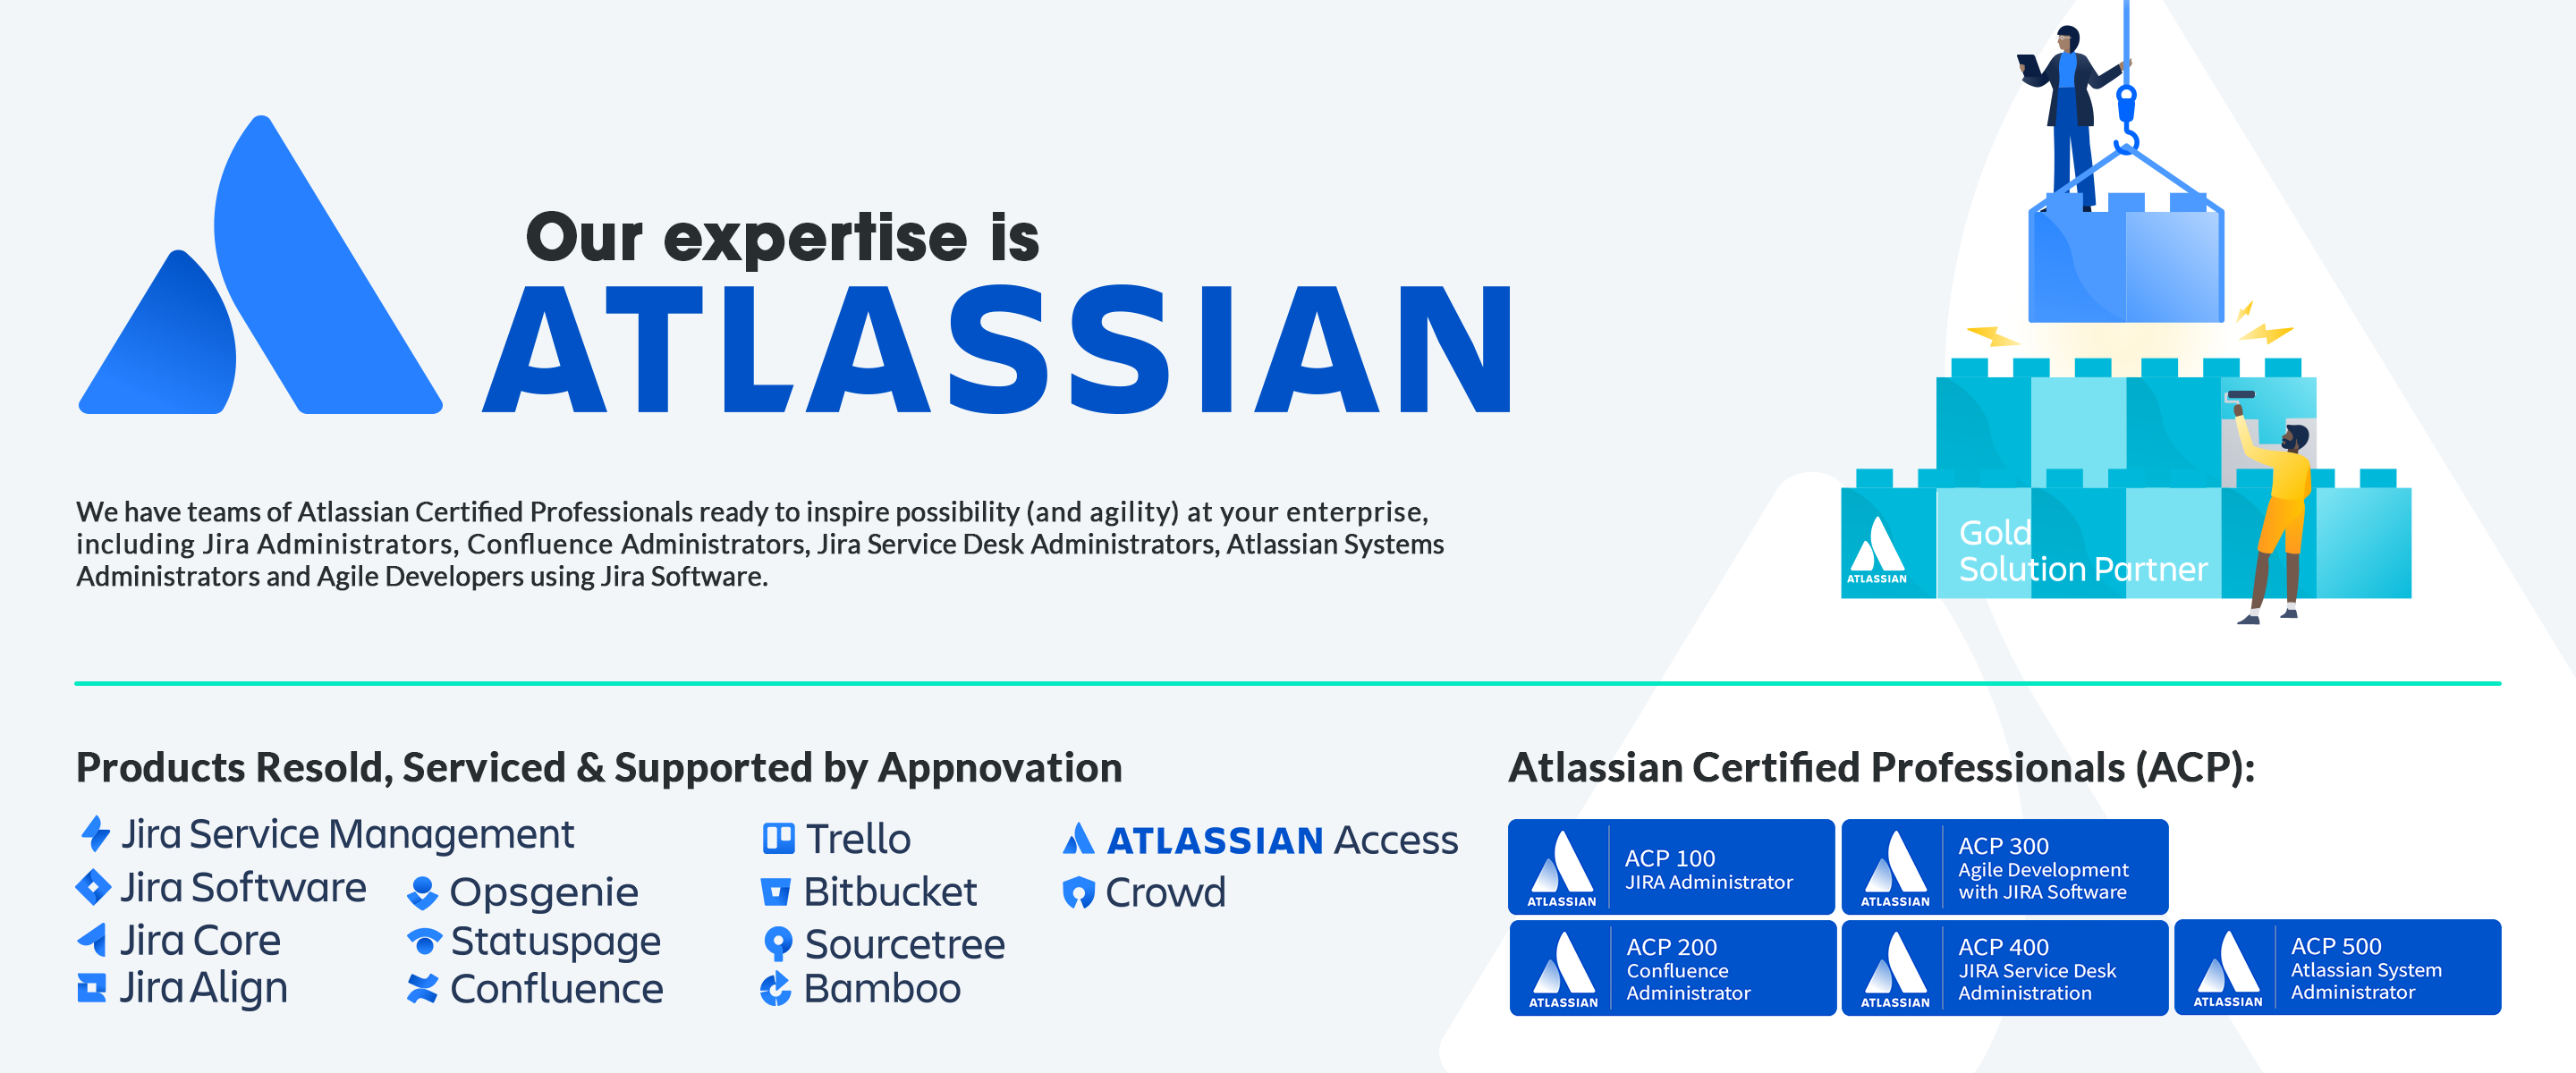 Atlassian expert, atlassian experts, atlassian company